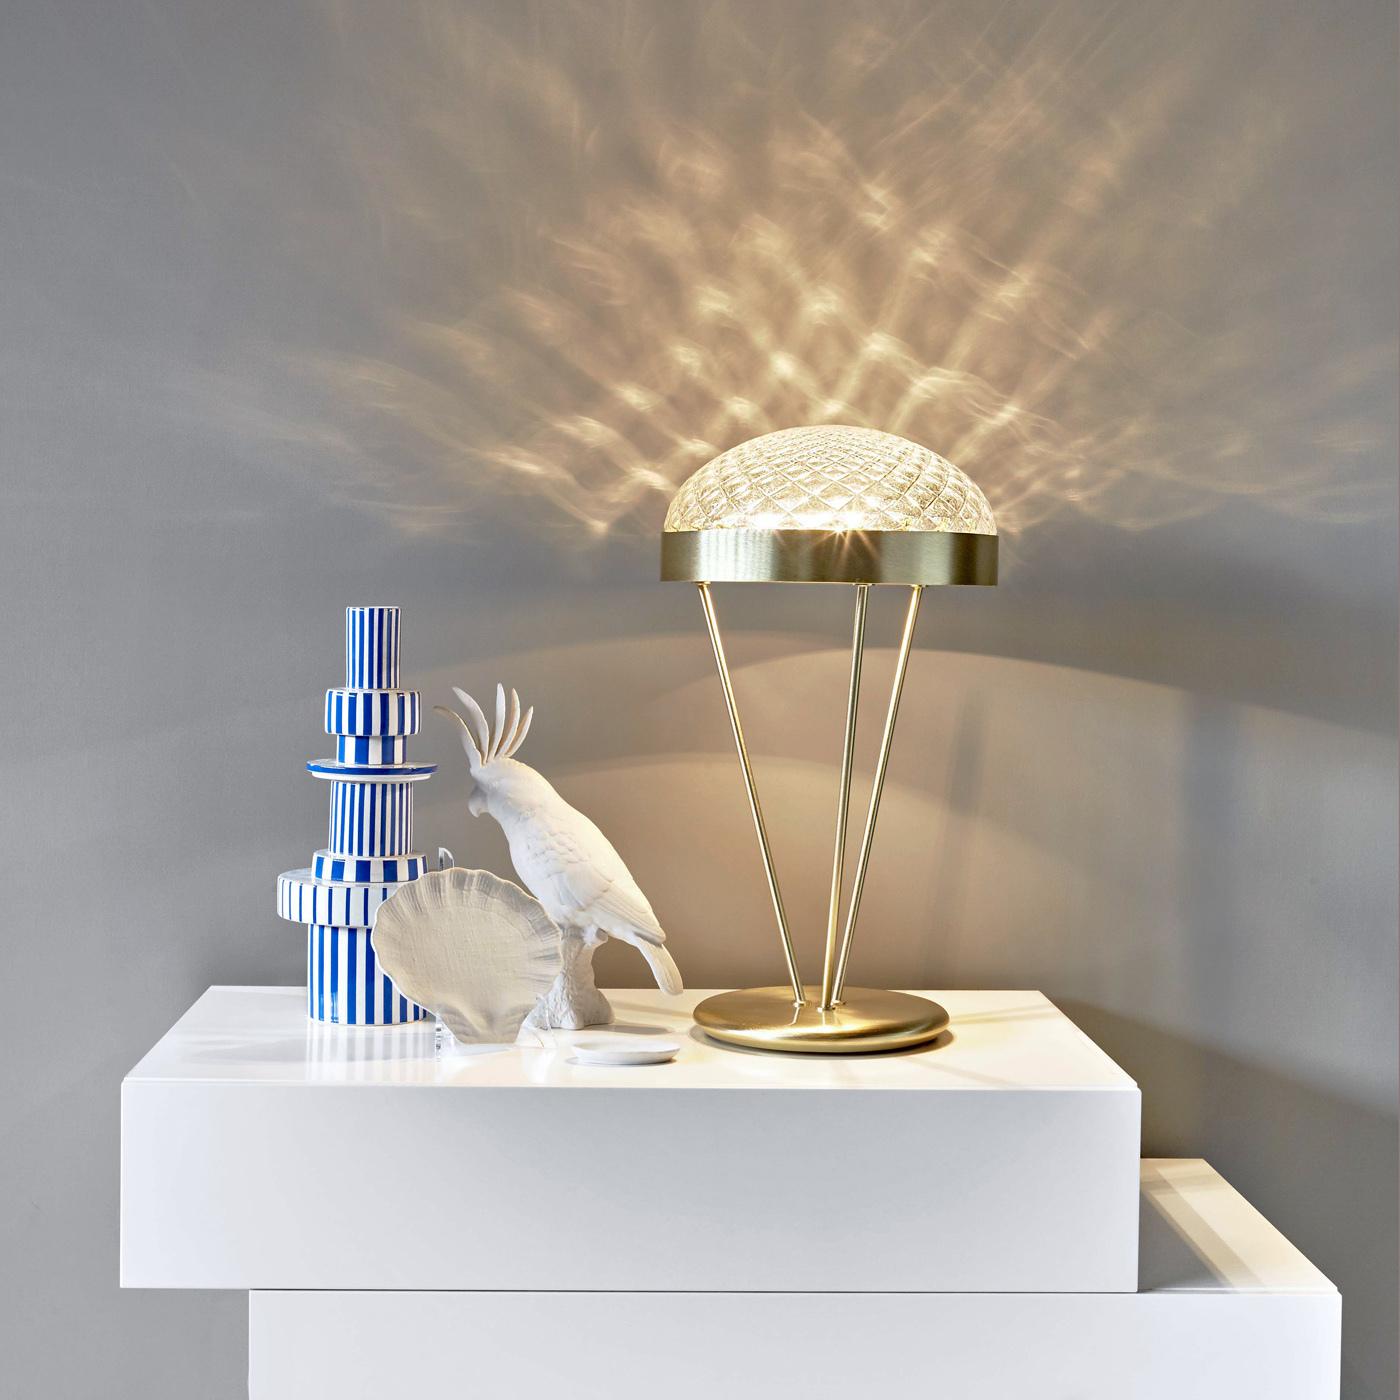 Inspirée des lignes classiques d'une applique, cette élégante lampe de table présente une structure métallique faite à la main avec une finition en laiton poli et un plateau semi-sphérique en précieux verre de Murano. Cette lampe à trois lumières a